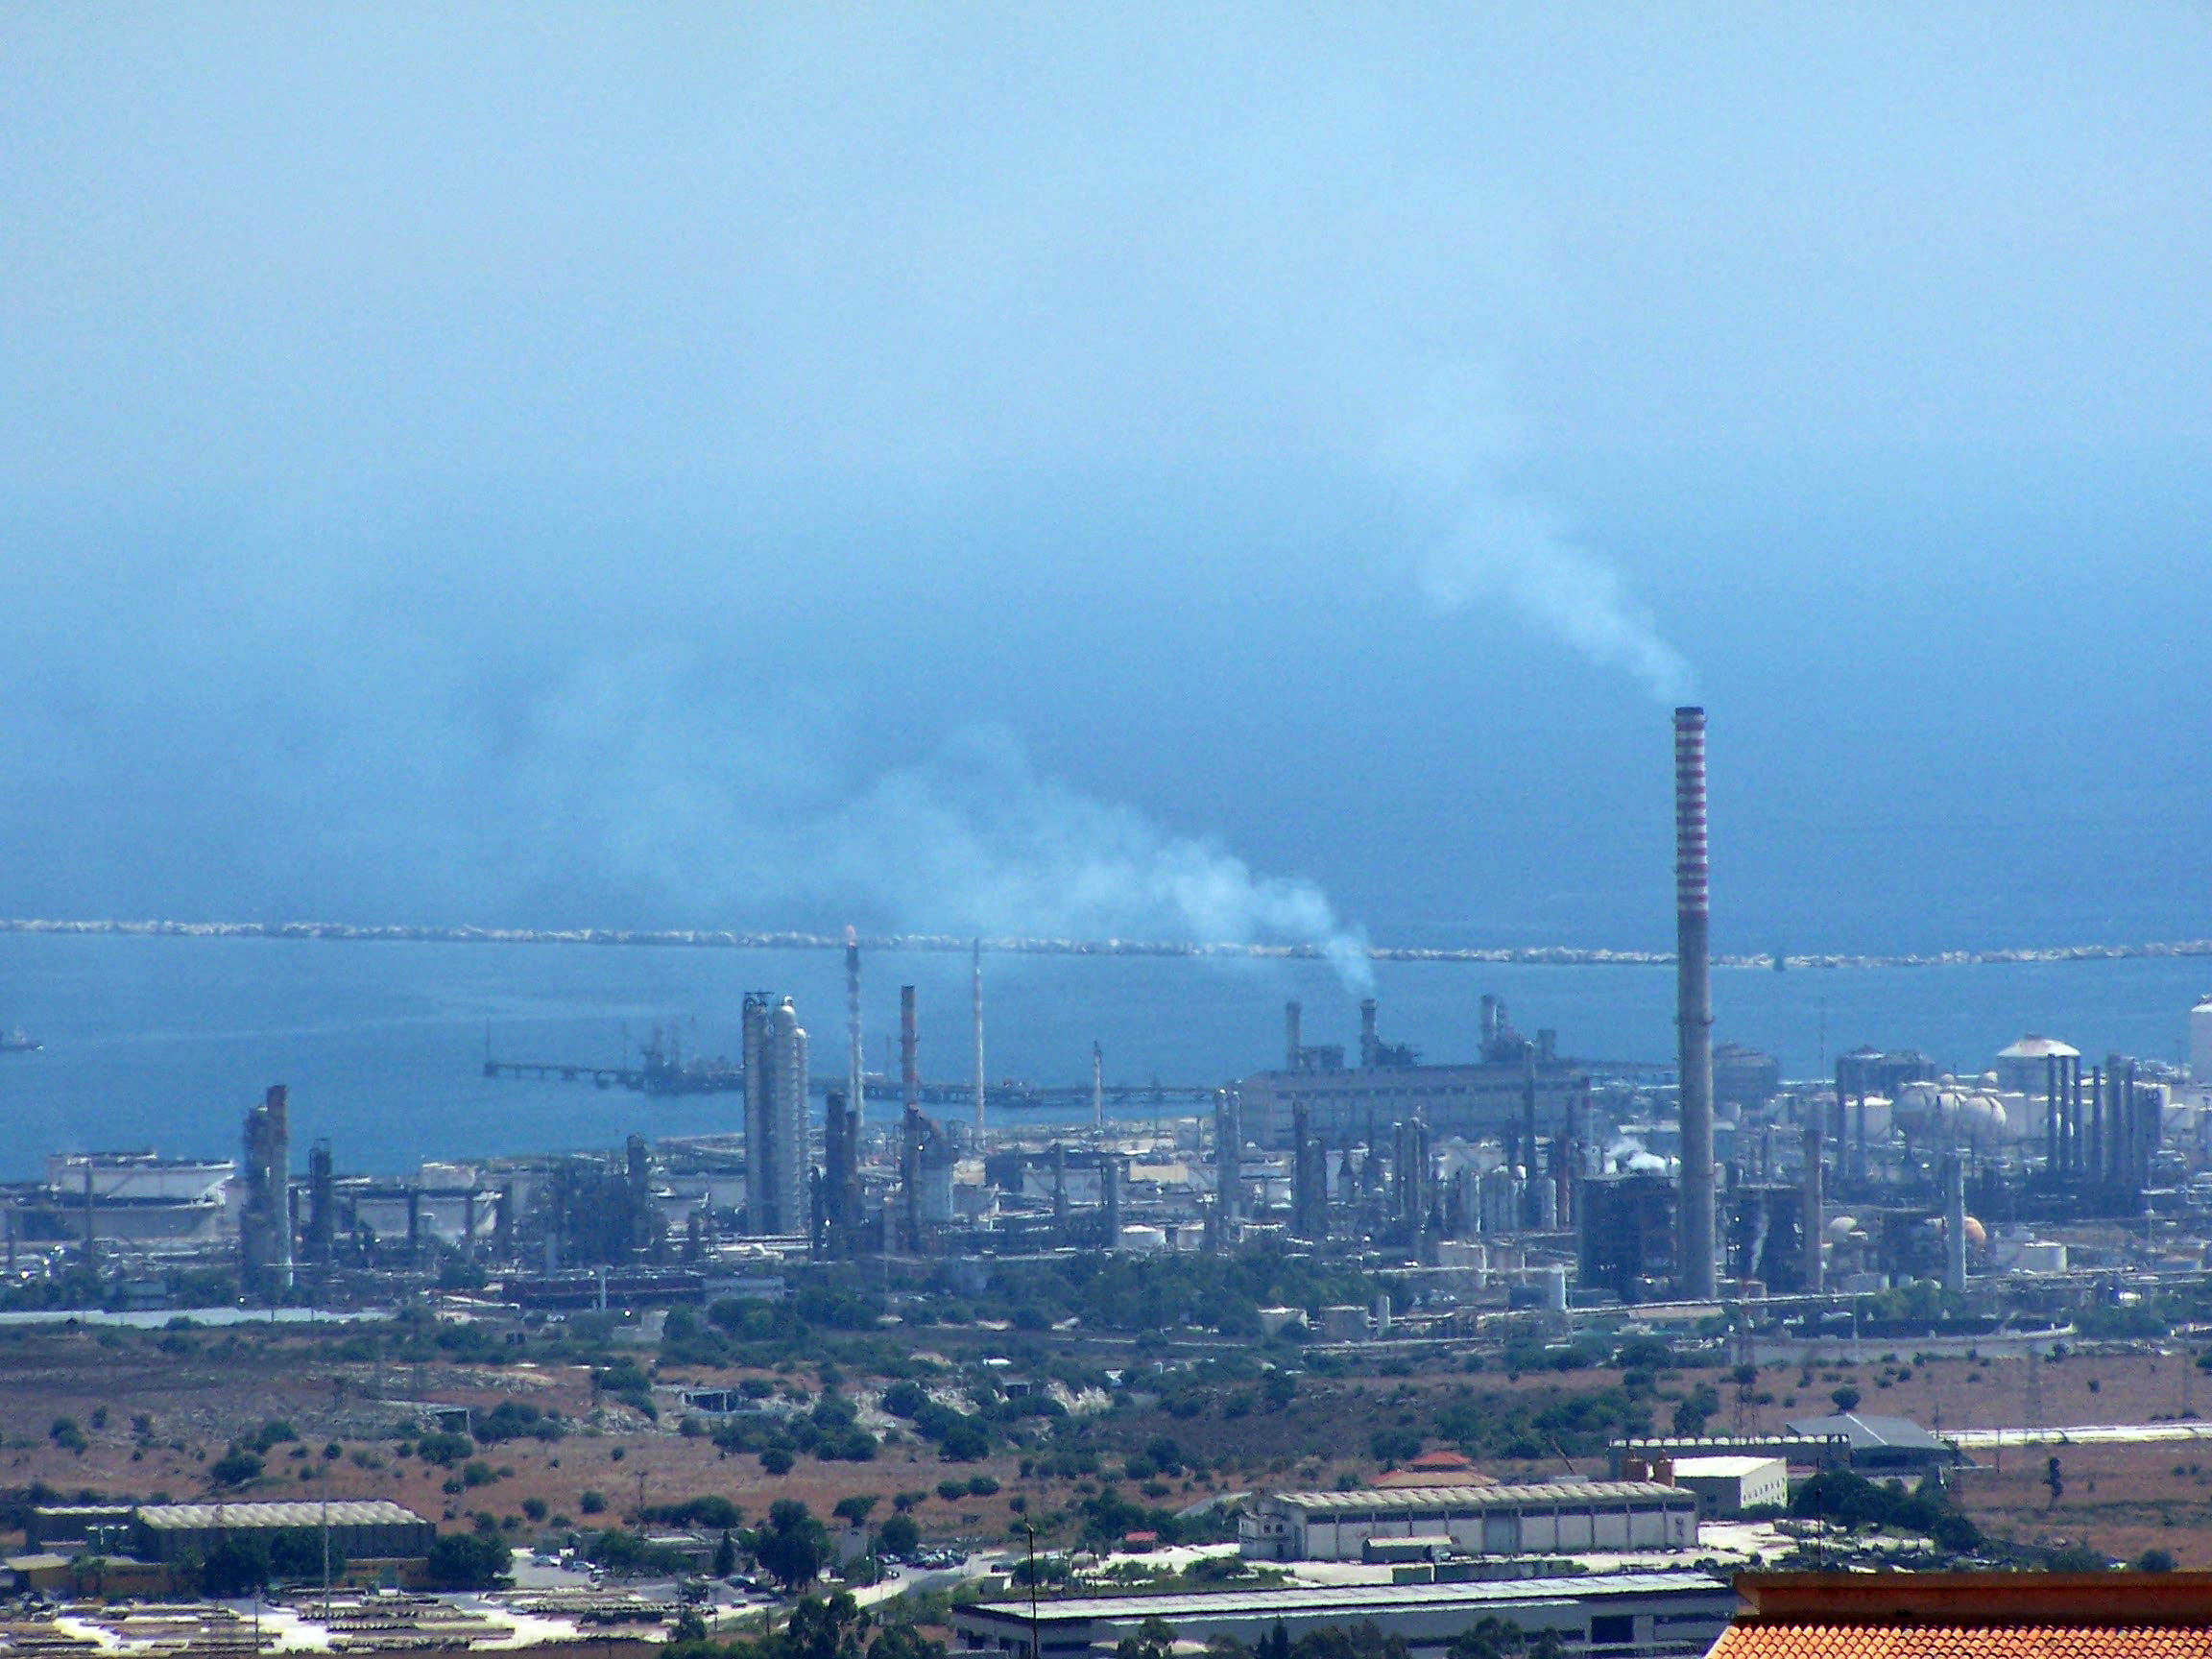 Sequestro impianti industriali nel Siracusano e cattiva qualità dell’aria, Morreale: “Qui la gente continua a morire”